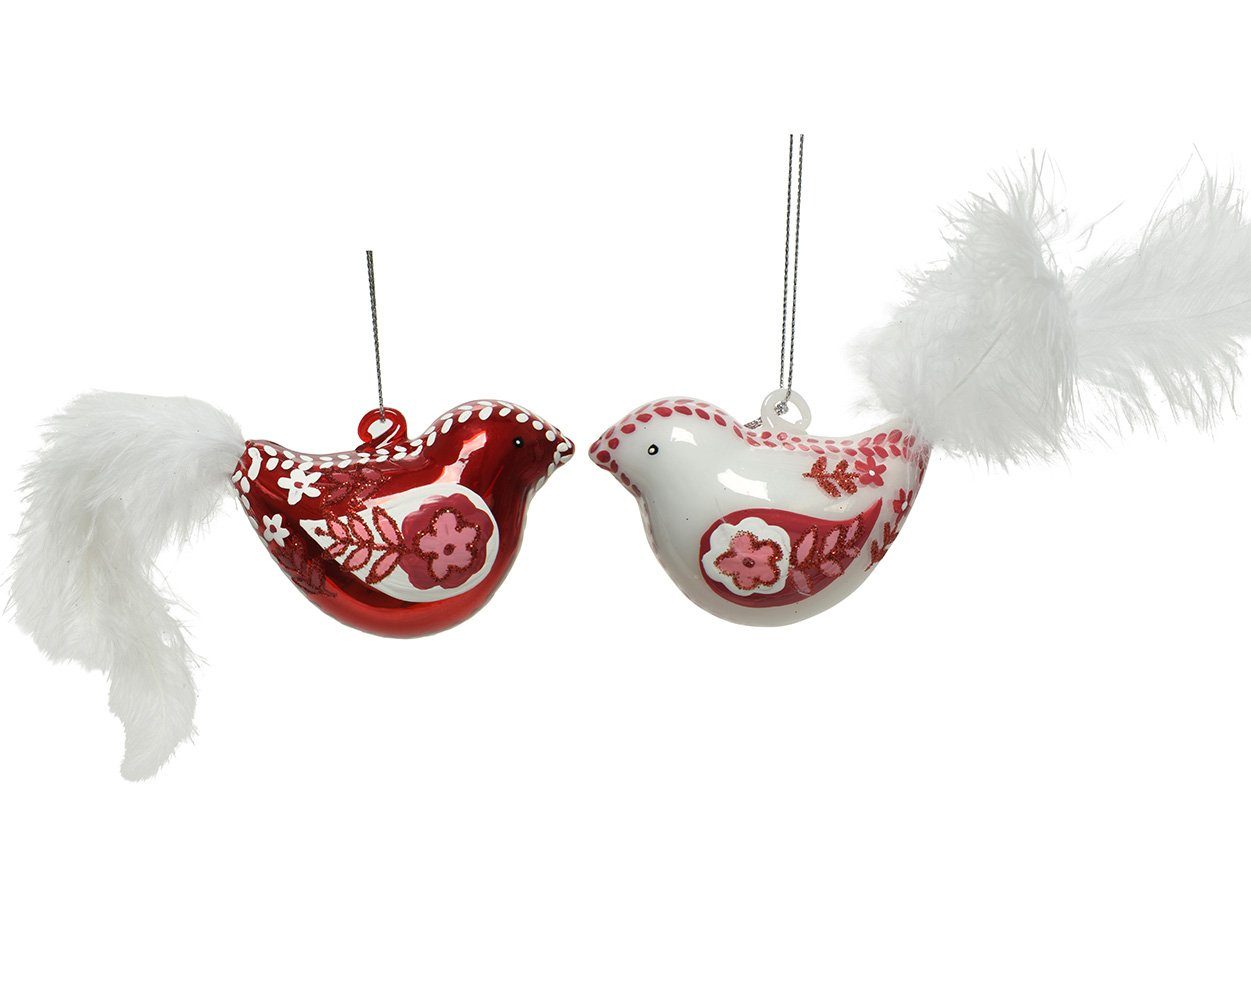 Decoris season decorations Christbaumschmuck, Christbaumschmuck Glas Vogel mit Motiv 8cm rot / weiß, 1 Stück sort.